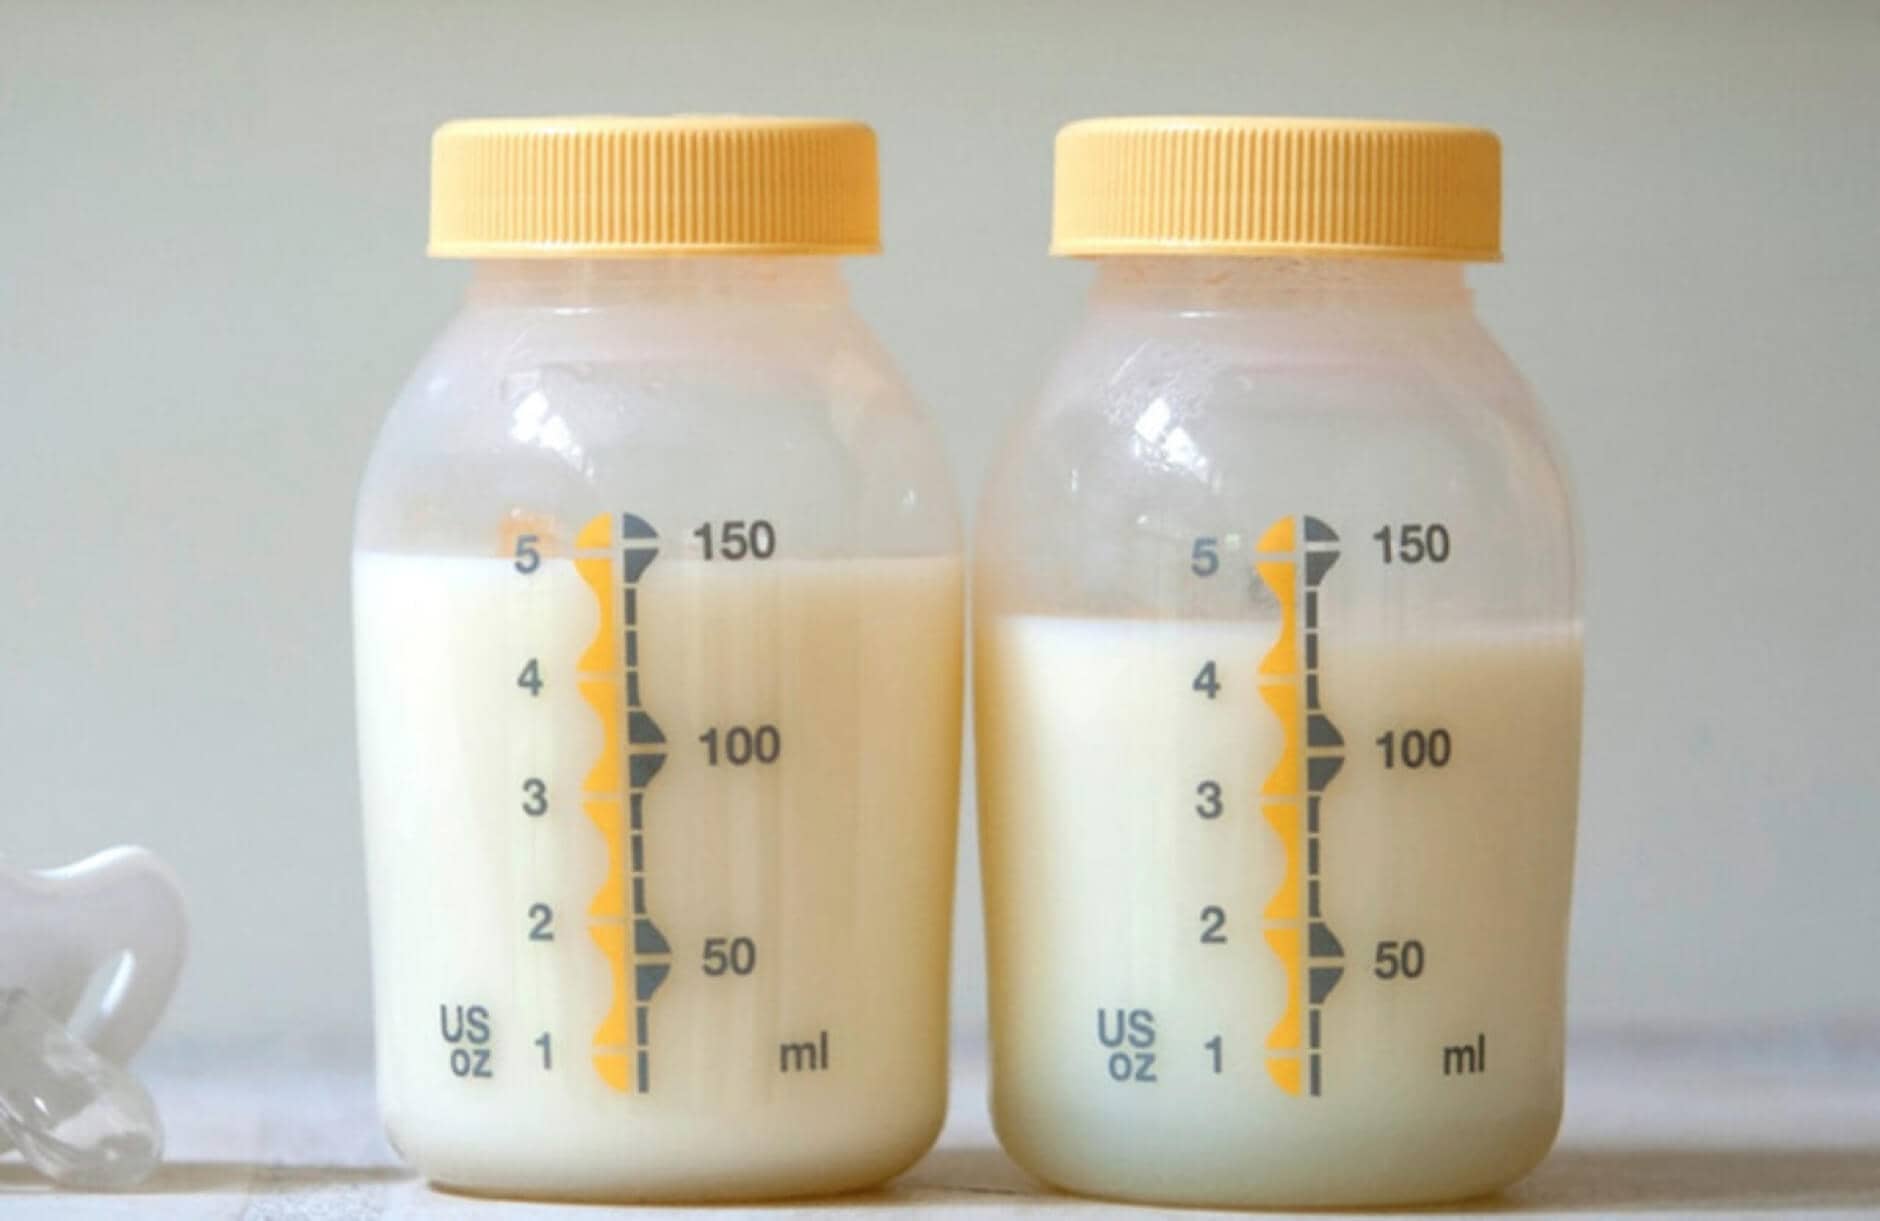 Tiêu chuẩn đánh giá sữa mẹ